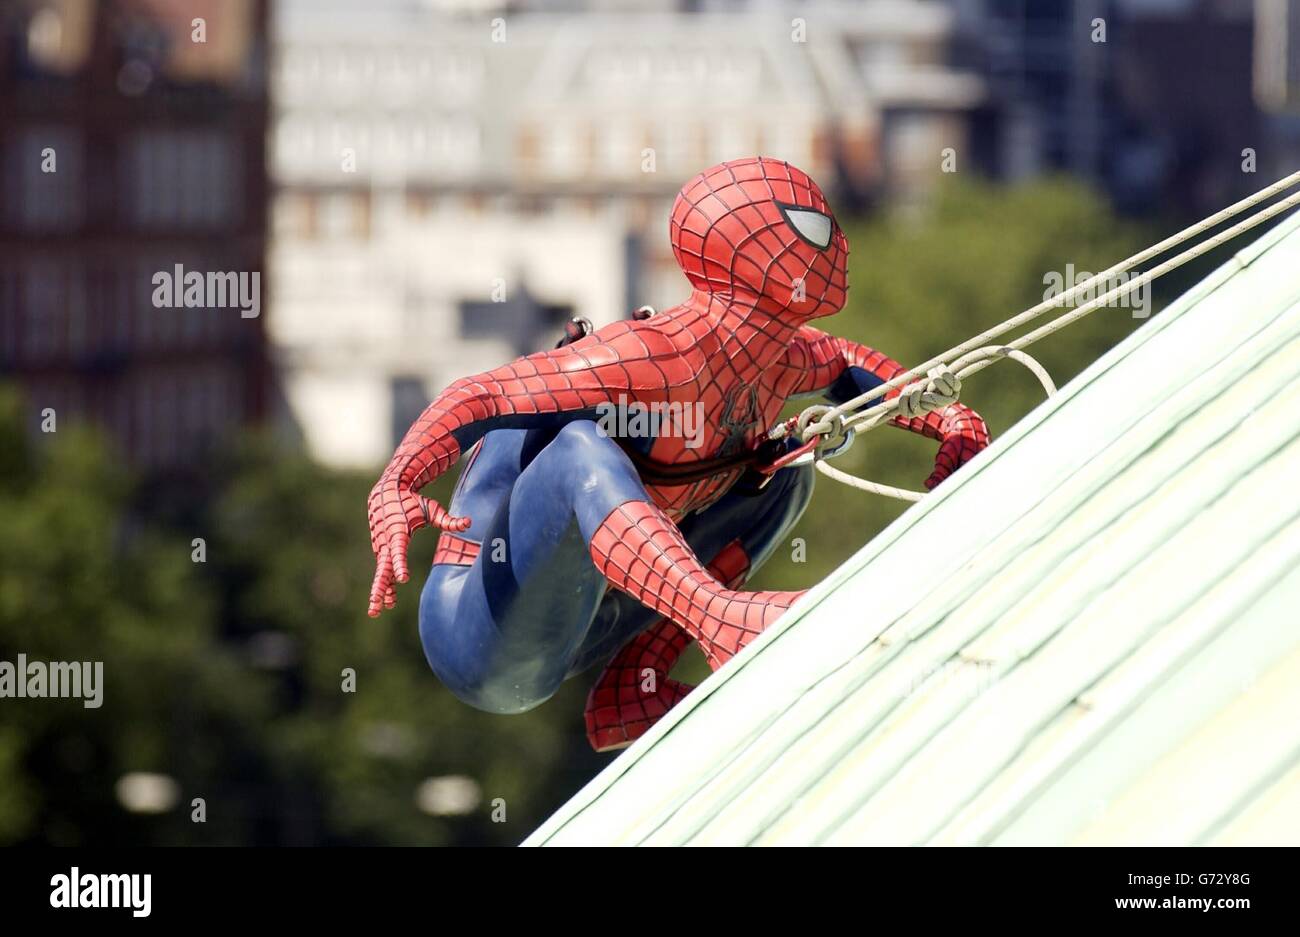 London Spider-Man